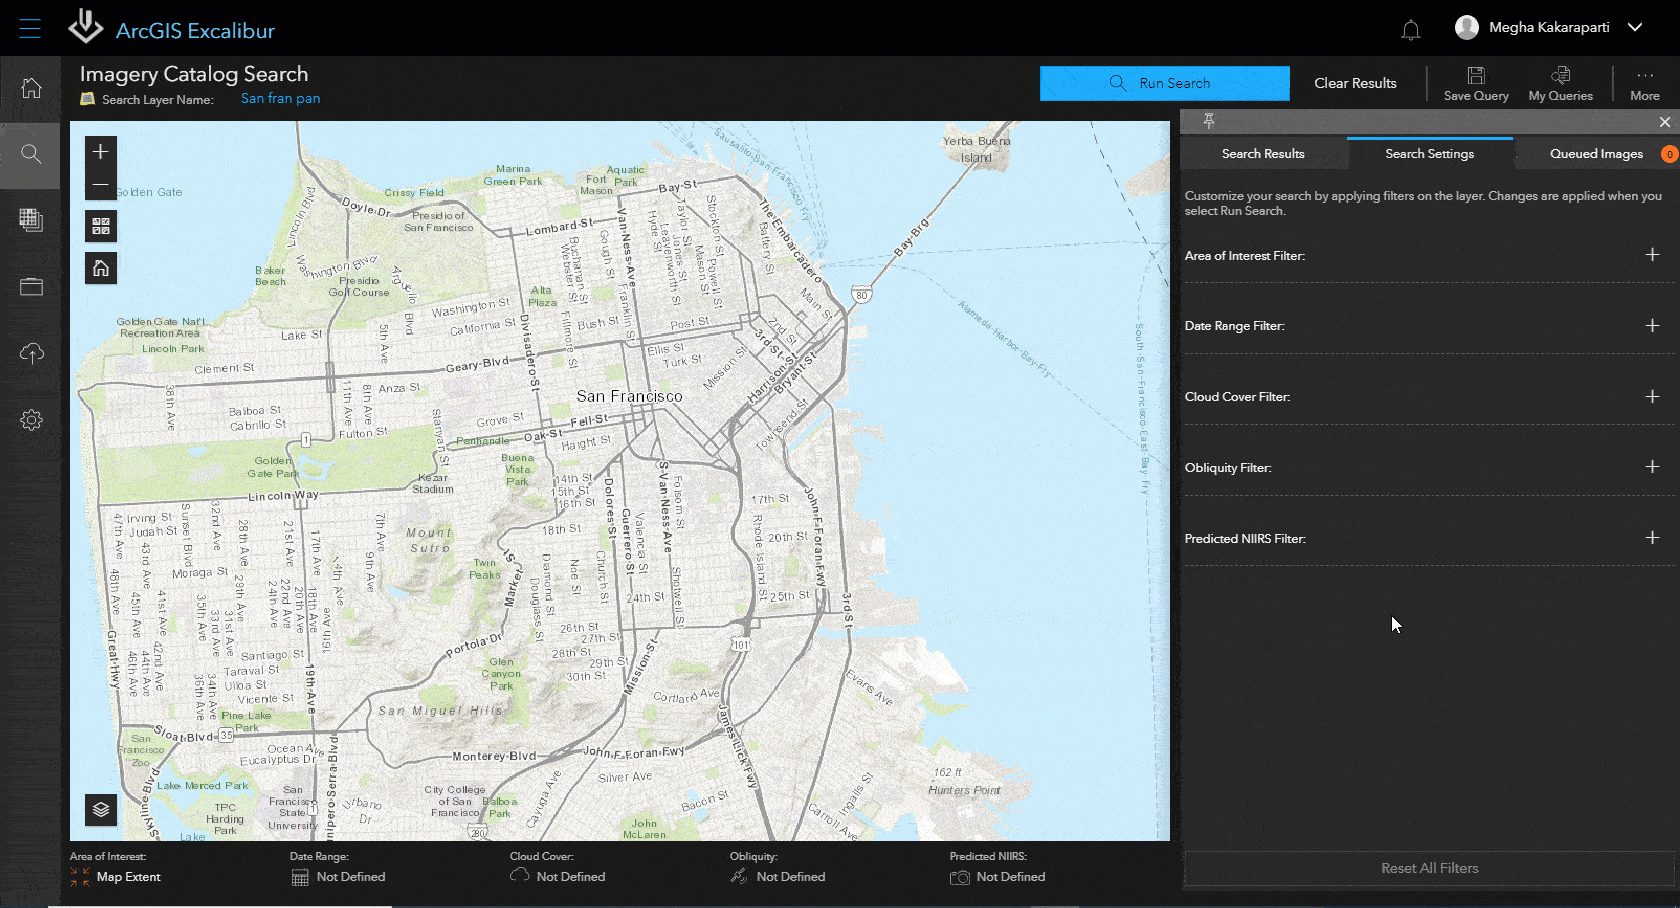 사각형 안에 빨간색 라인이 표시된 샌프란시스코의 디지털 맵으로, ArcGIS Excalibur의 이용 가능한 영상 검색을 보여주는 이미지 